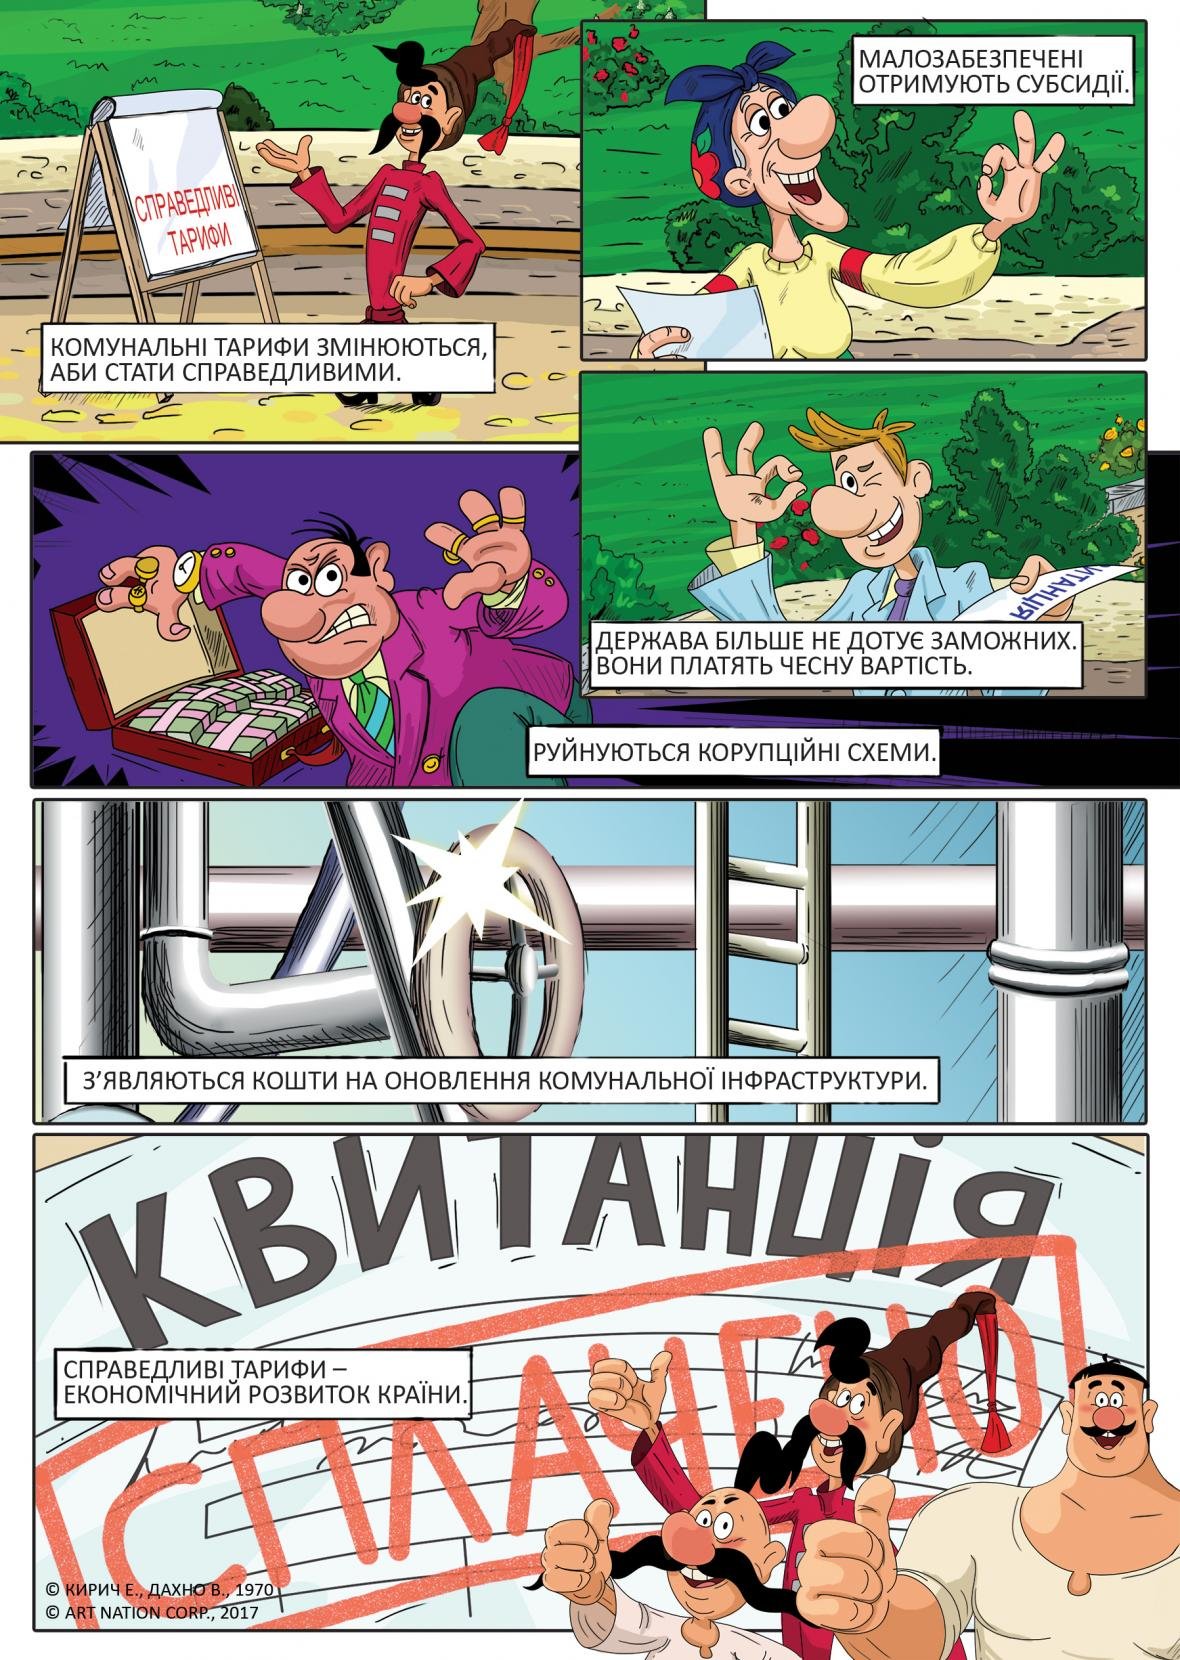 Легендарный мультфильм «Как казаки ...» интерпретировали в комиксах о тарифах, фото-1